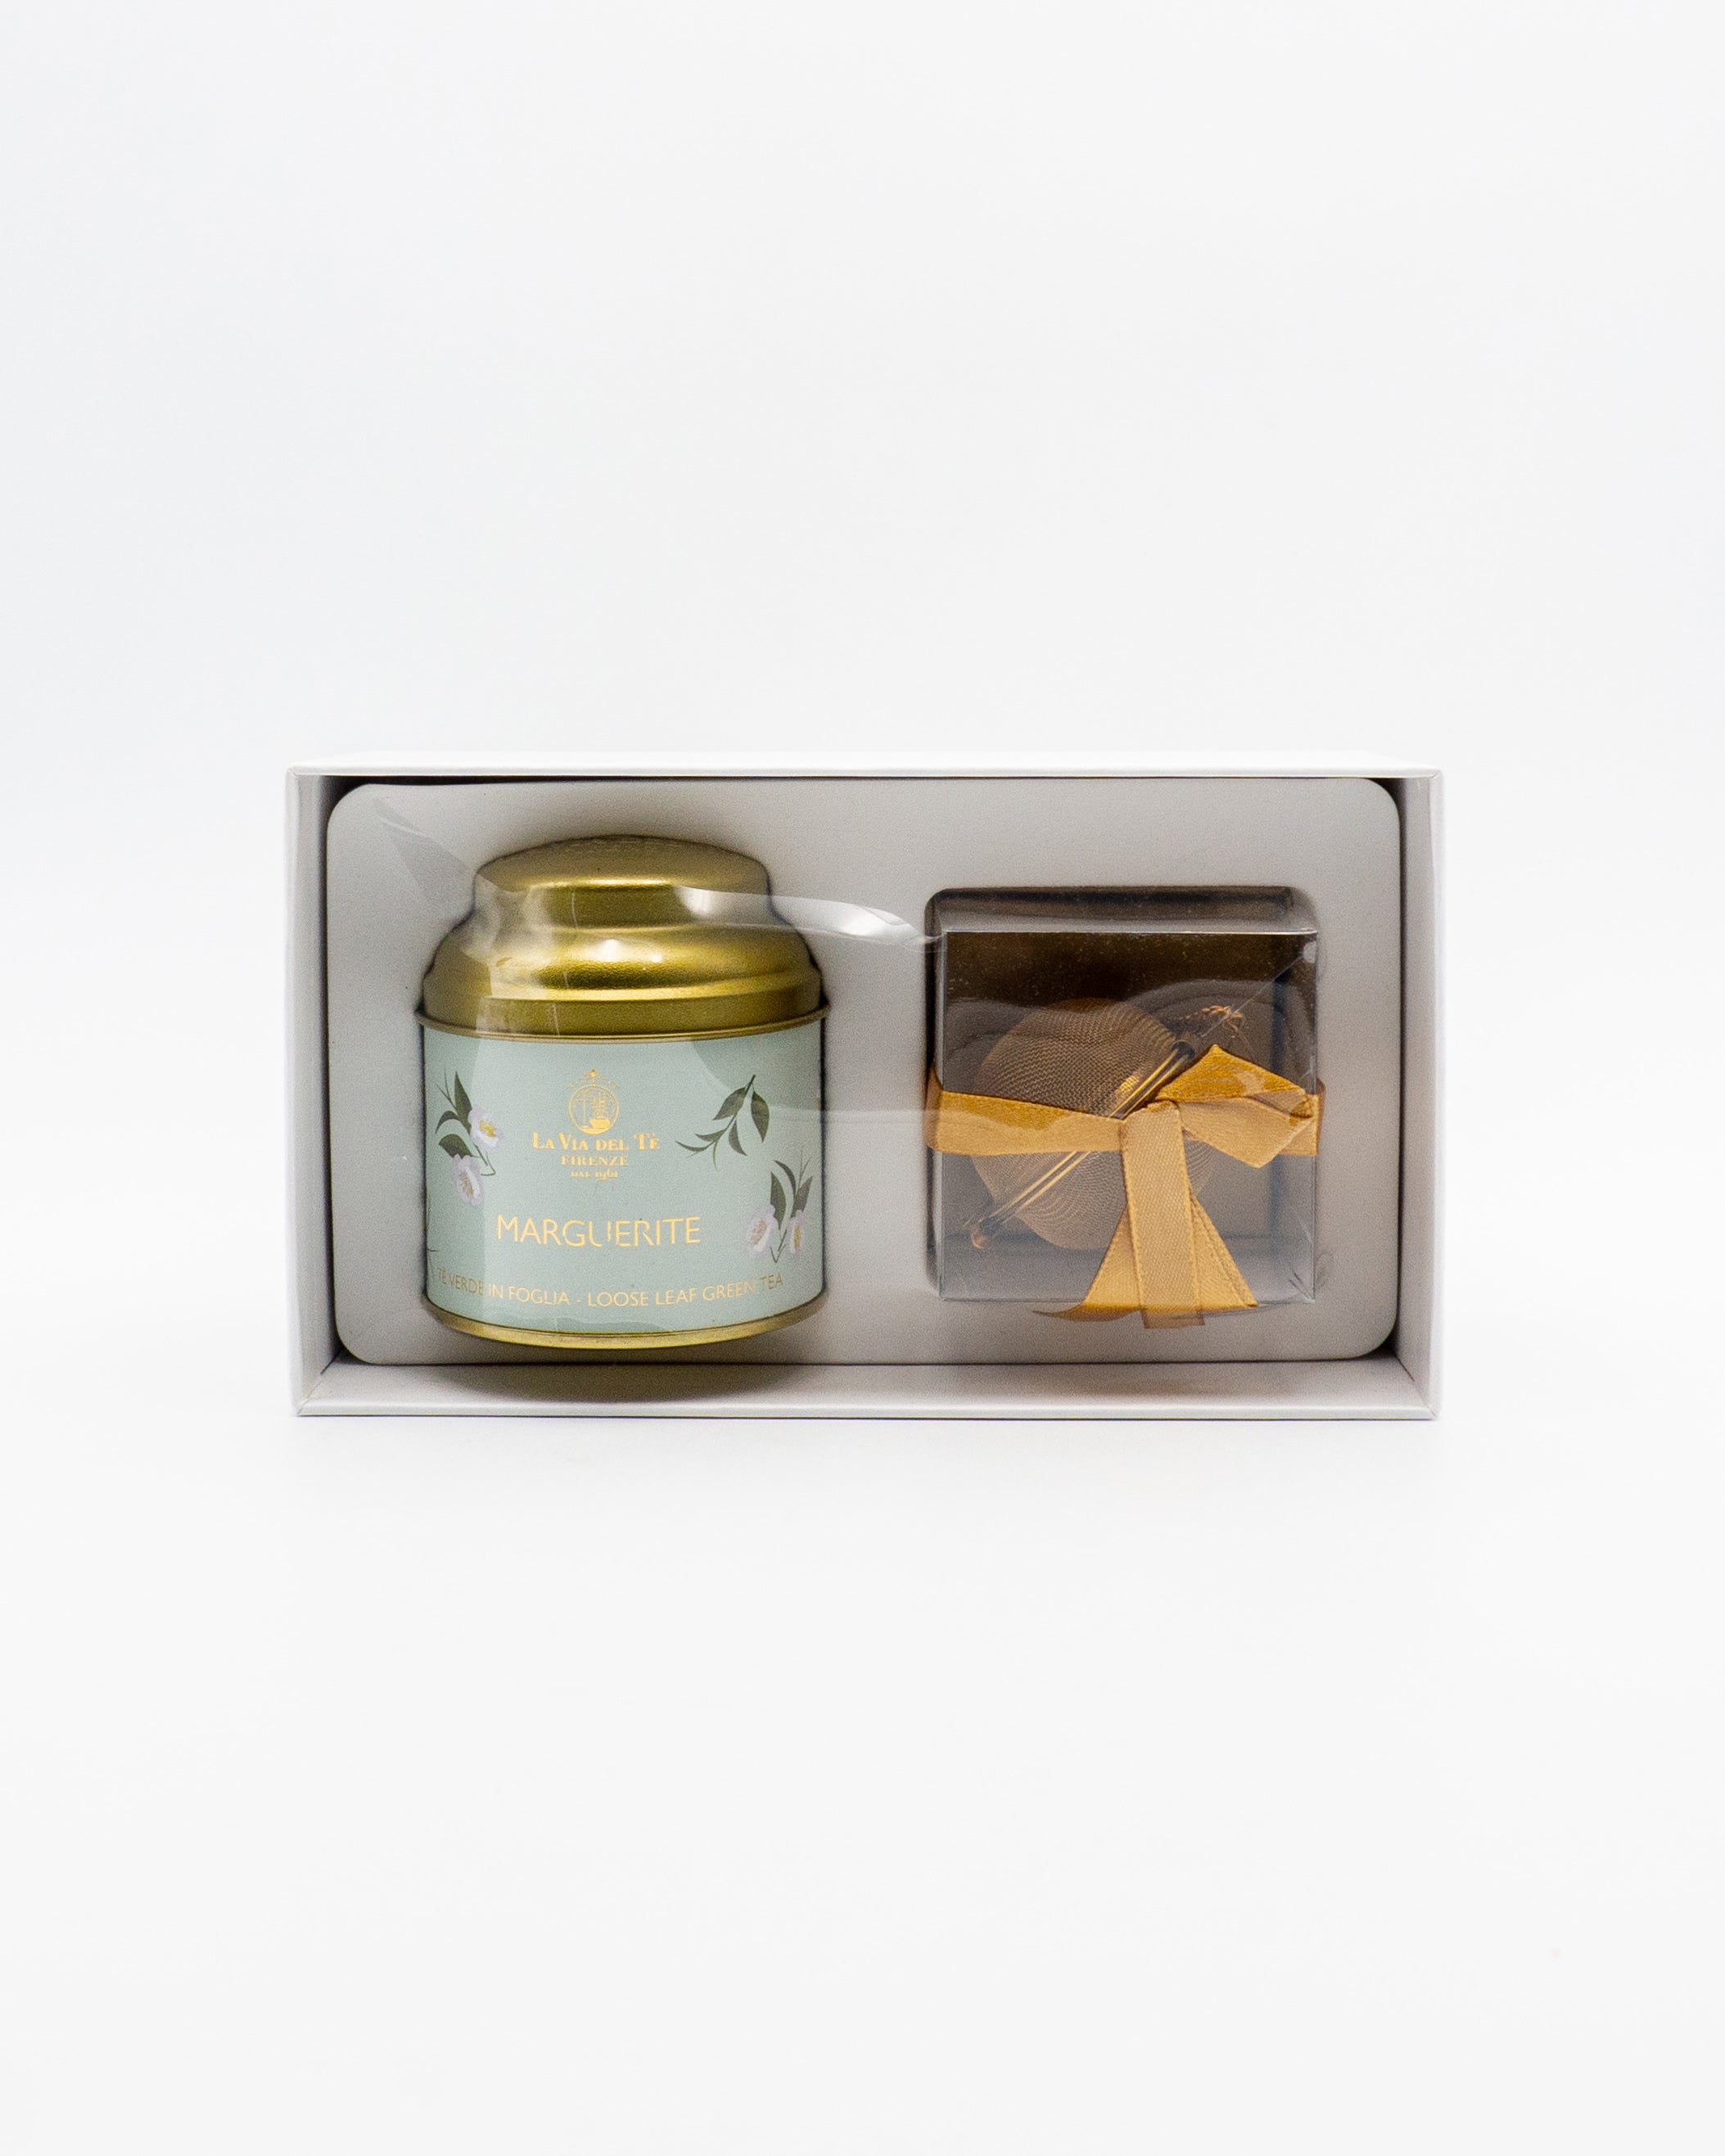 Le Signore delle Camelie - scatola regalo Tè Marguerite più infusore - La Via del Tè